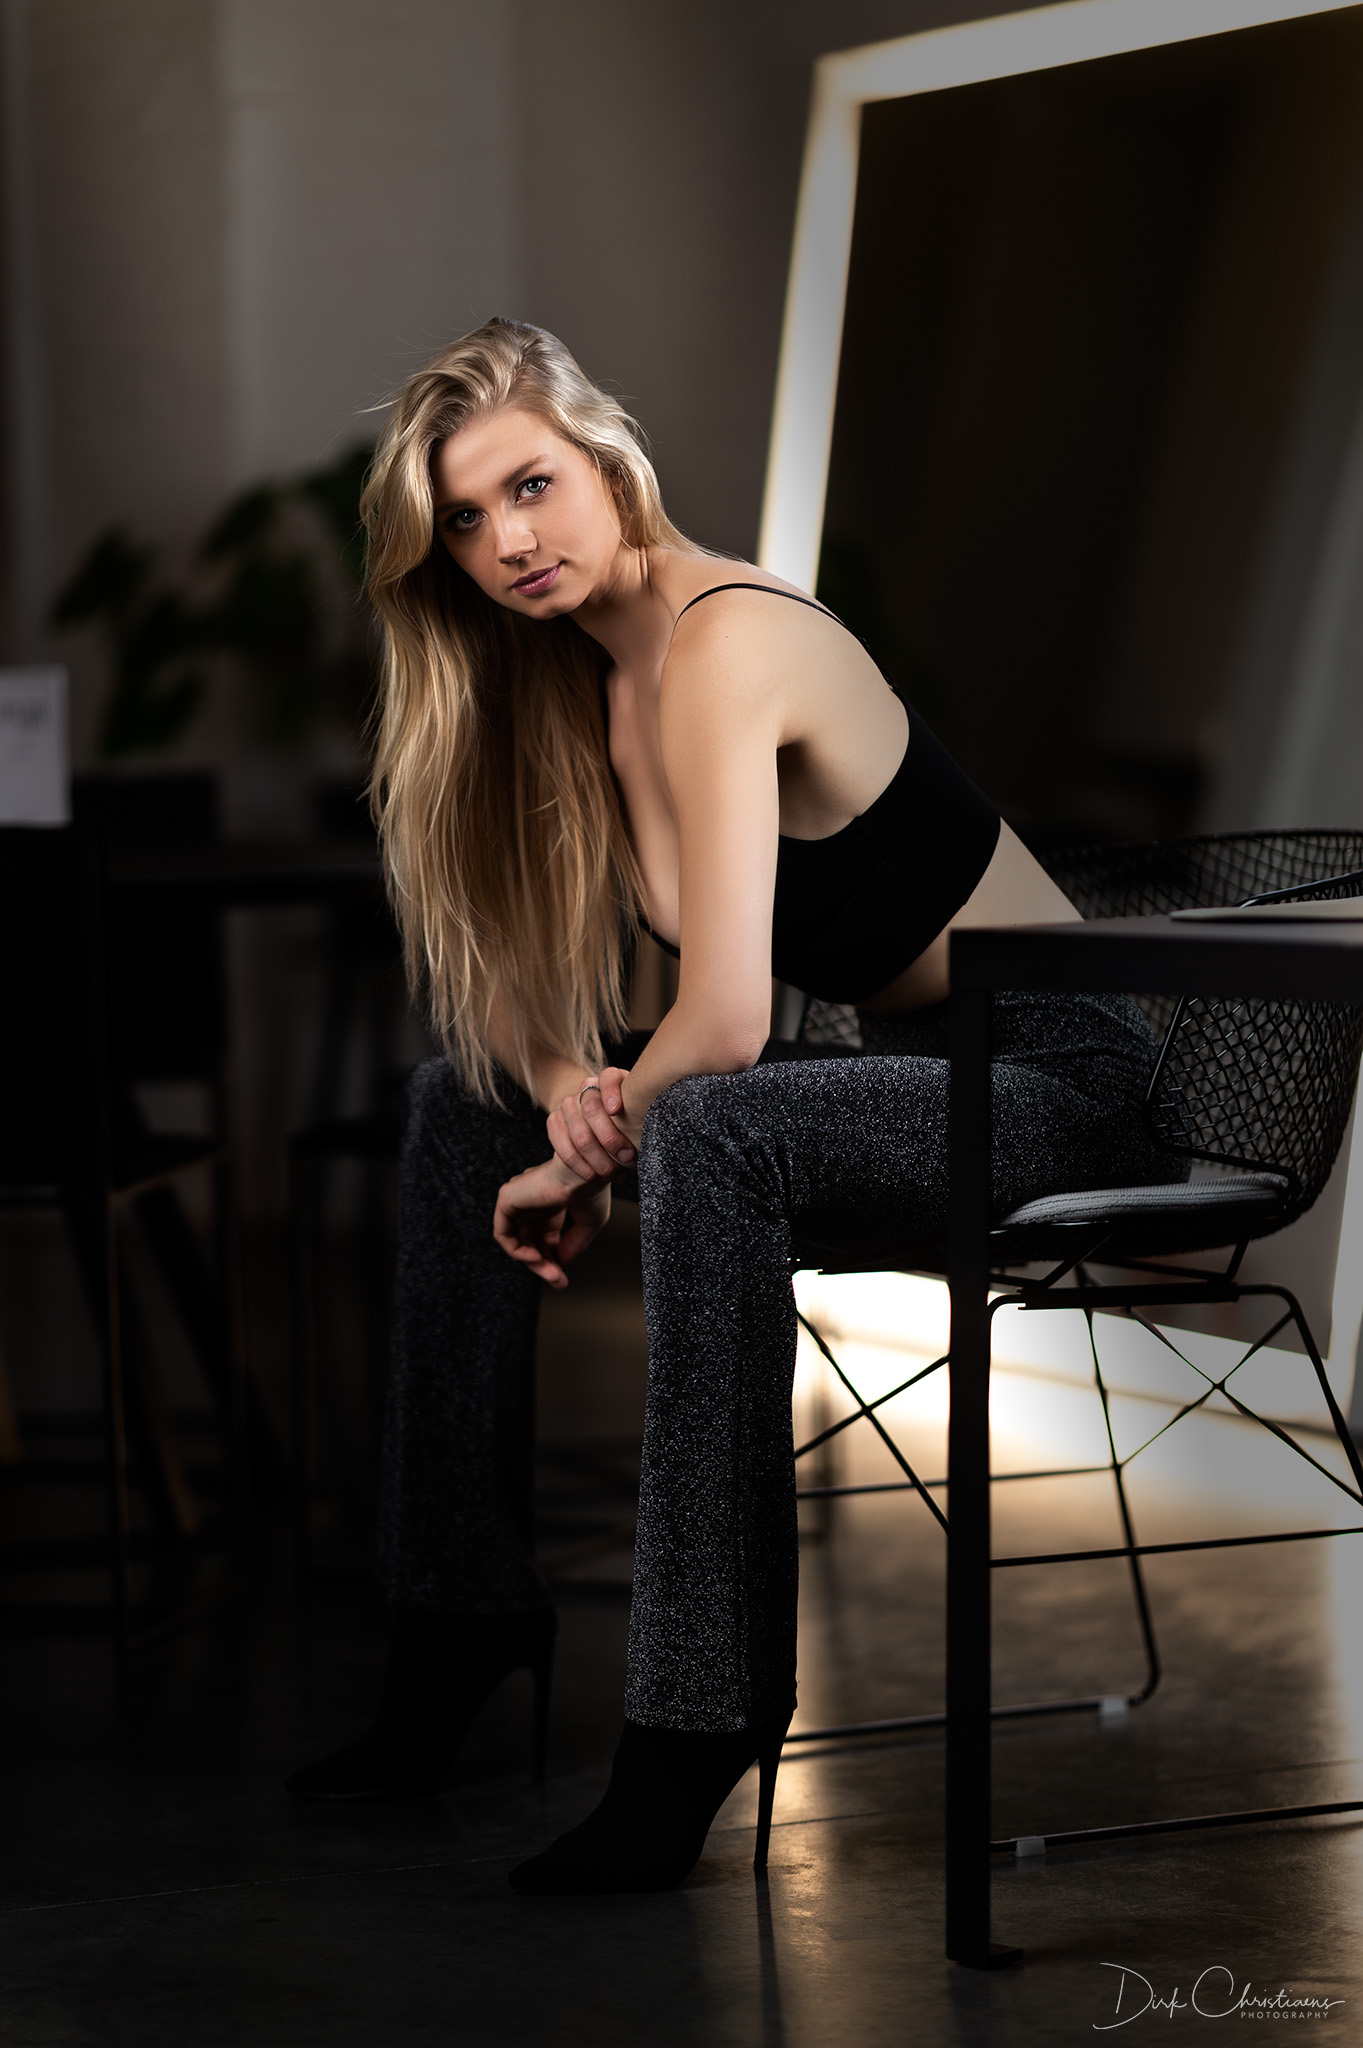 Bo Ackaert, model from Belgium at a boudoir photoshoot